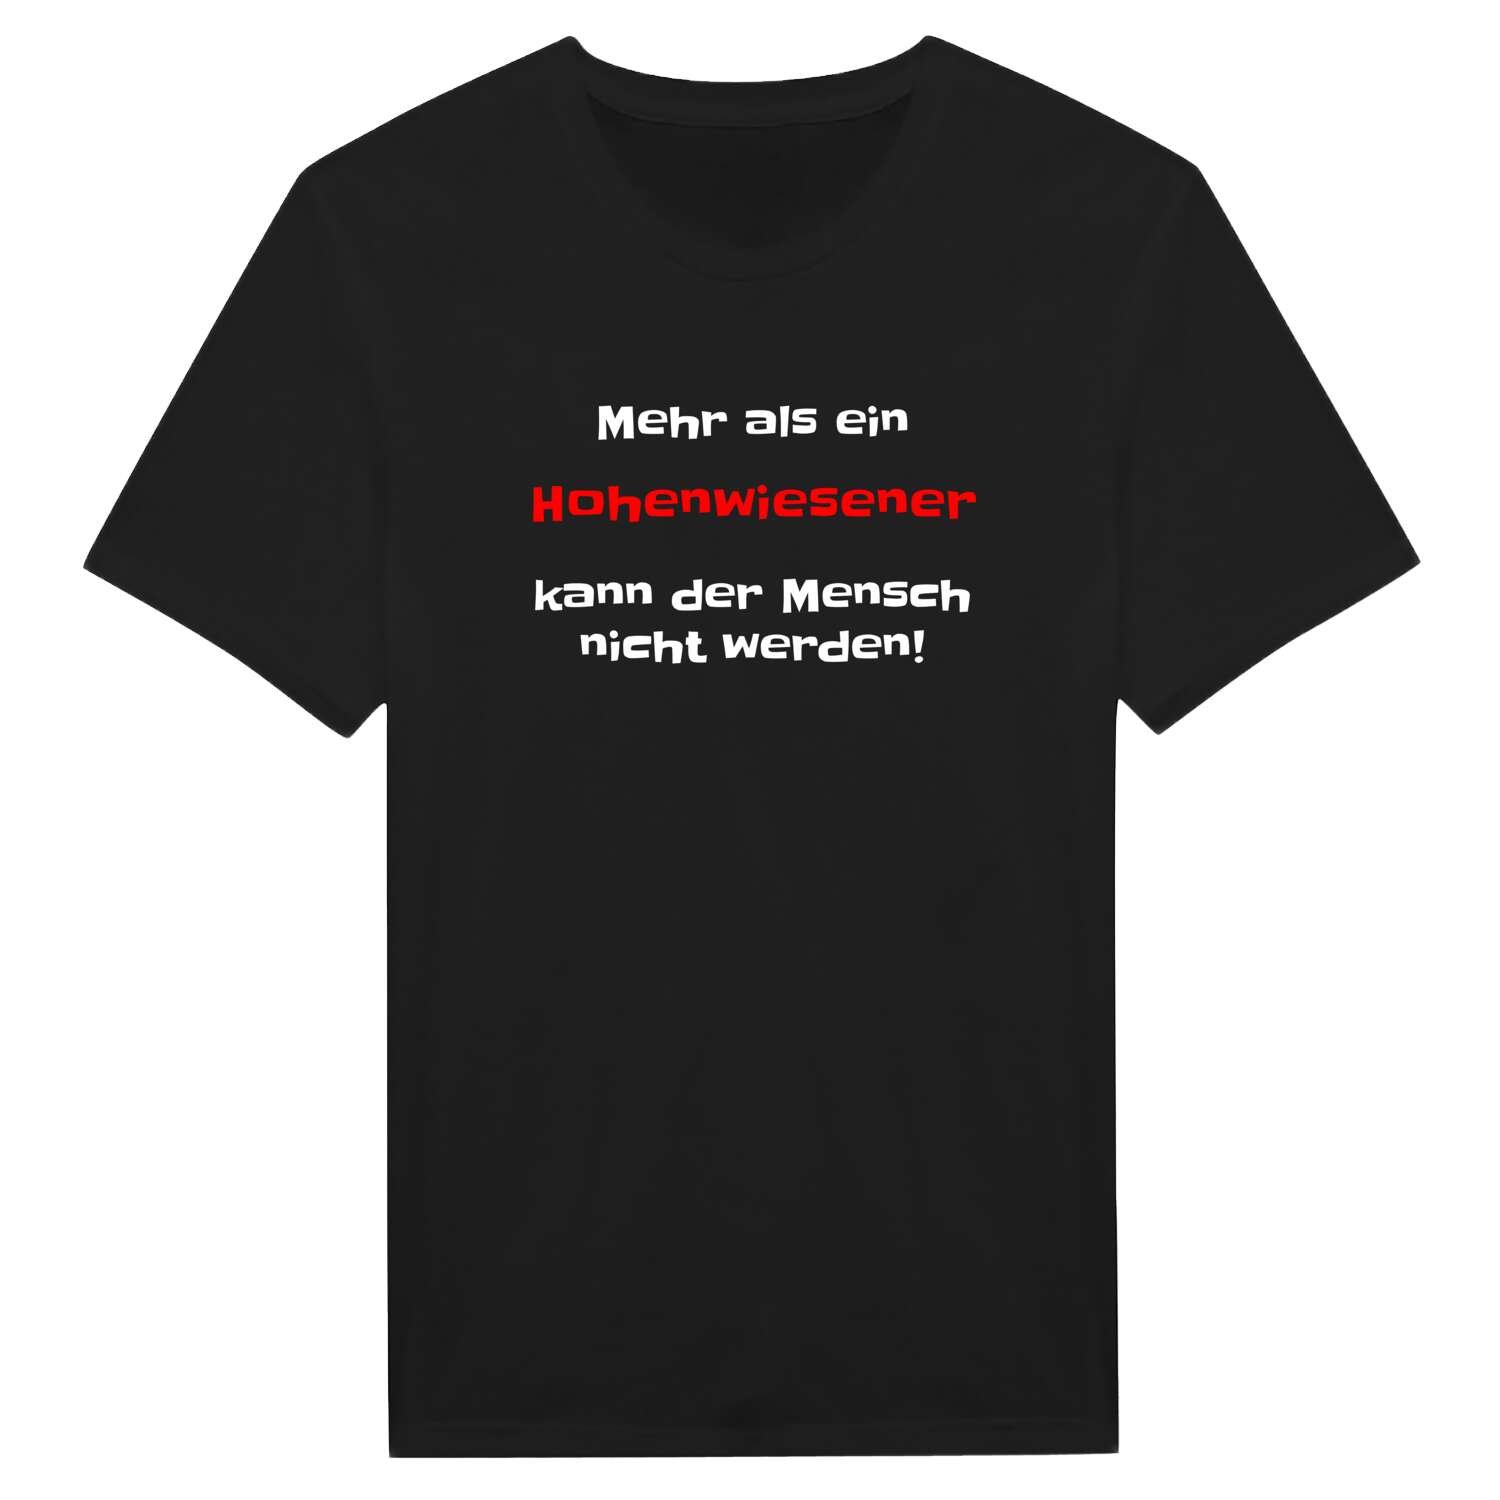 Hohenwiesen T-Shirt »Mehr als ein«